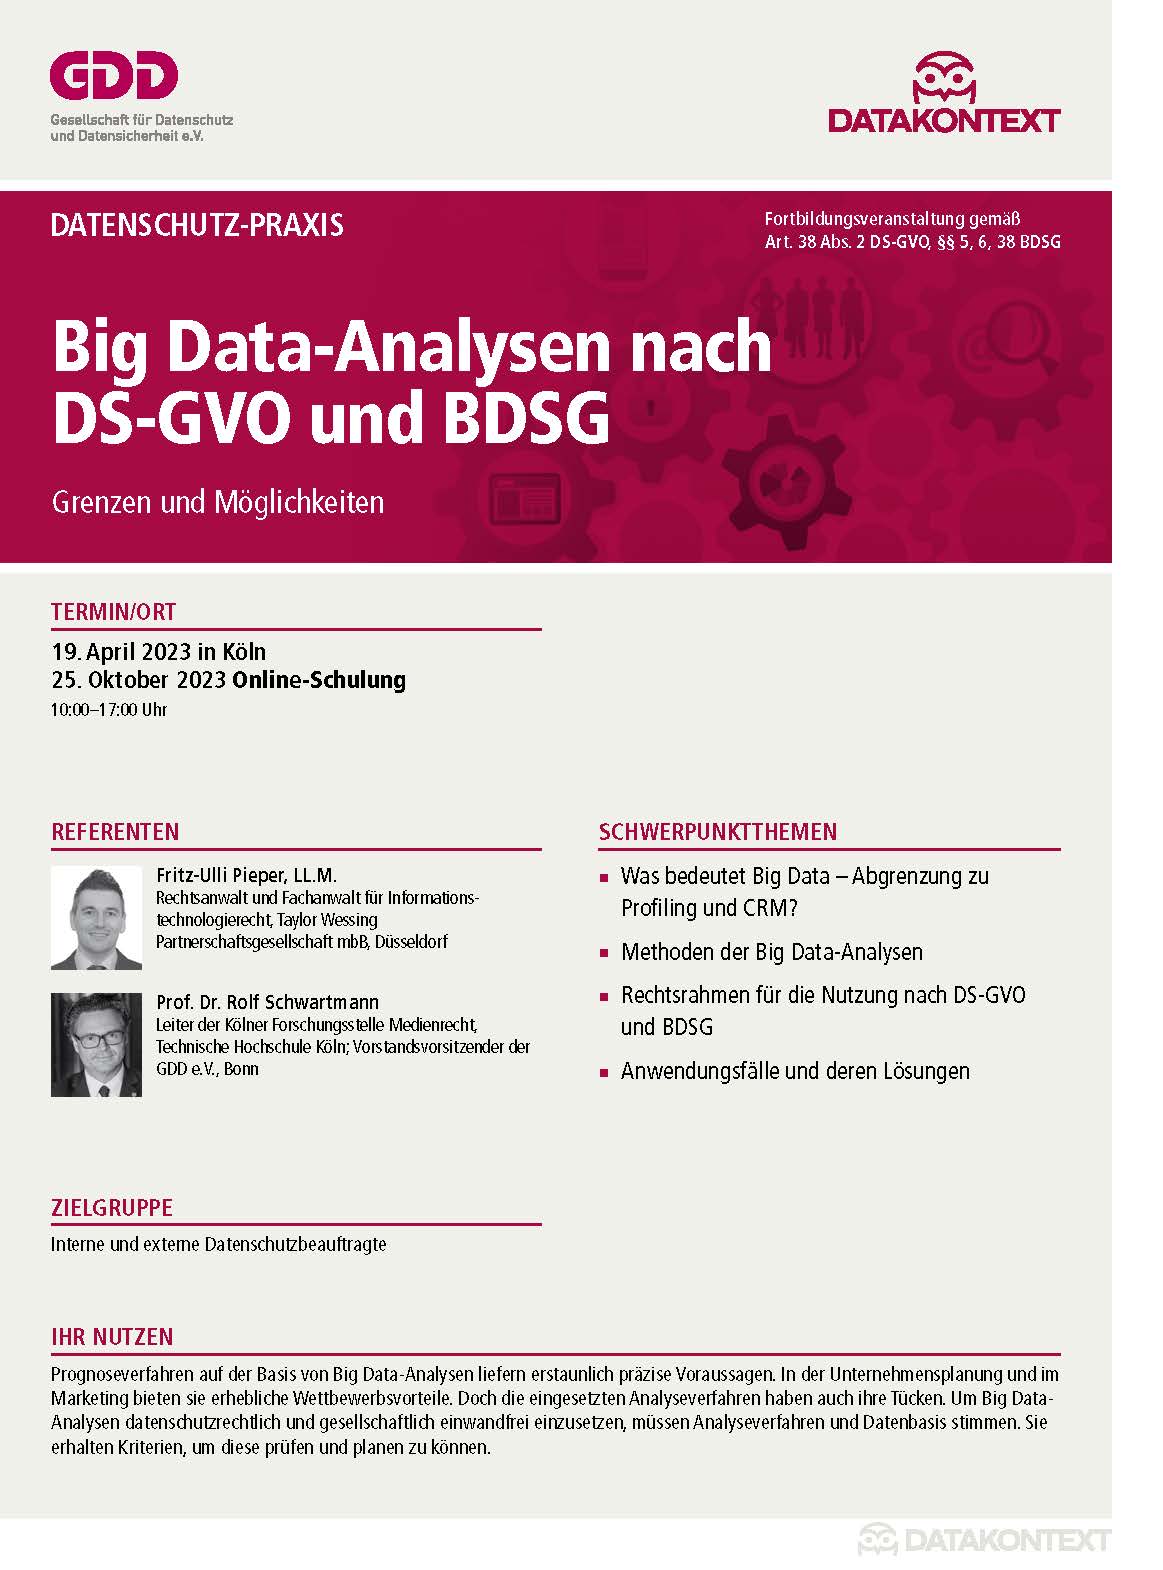 Big Data-Analysen nach DS-GVO und BDSG